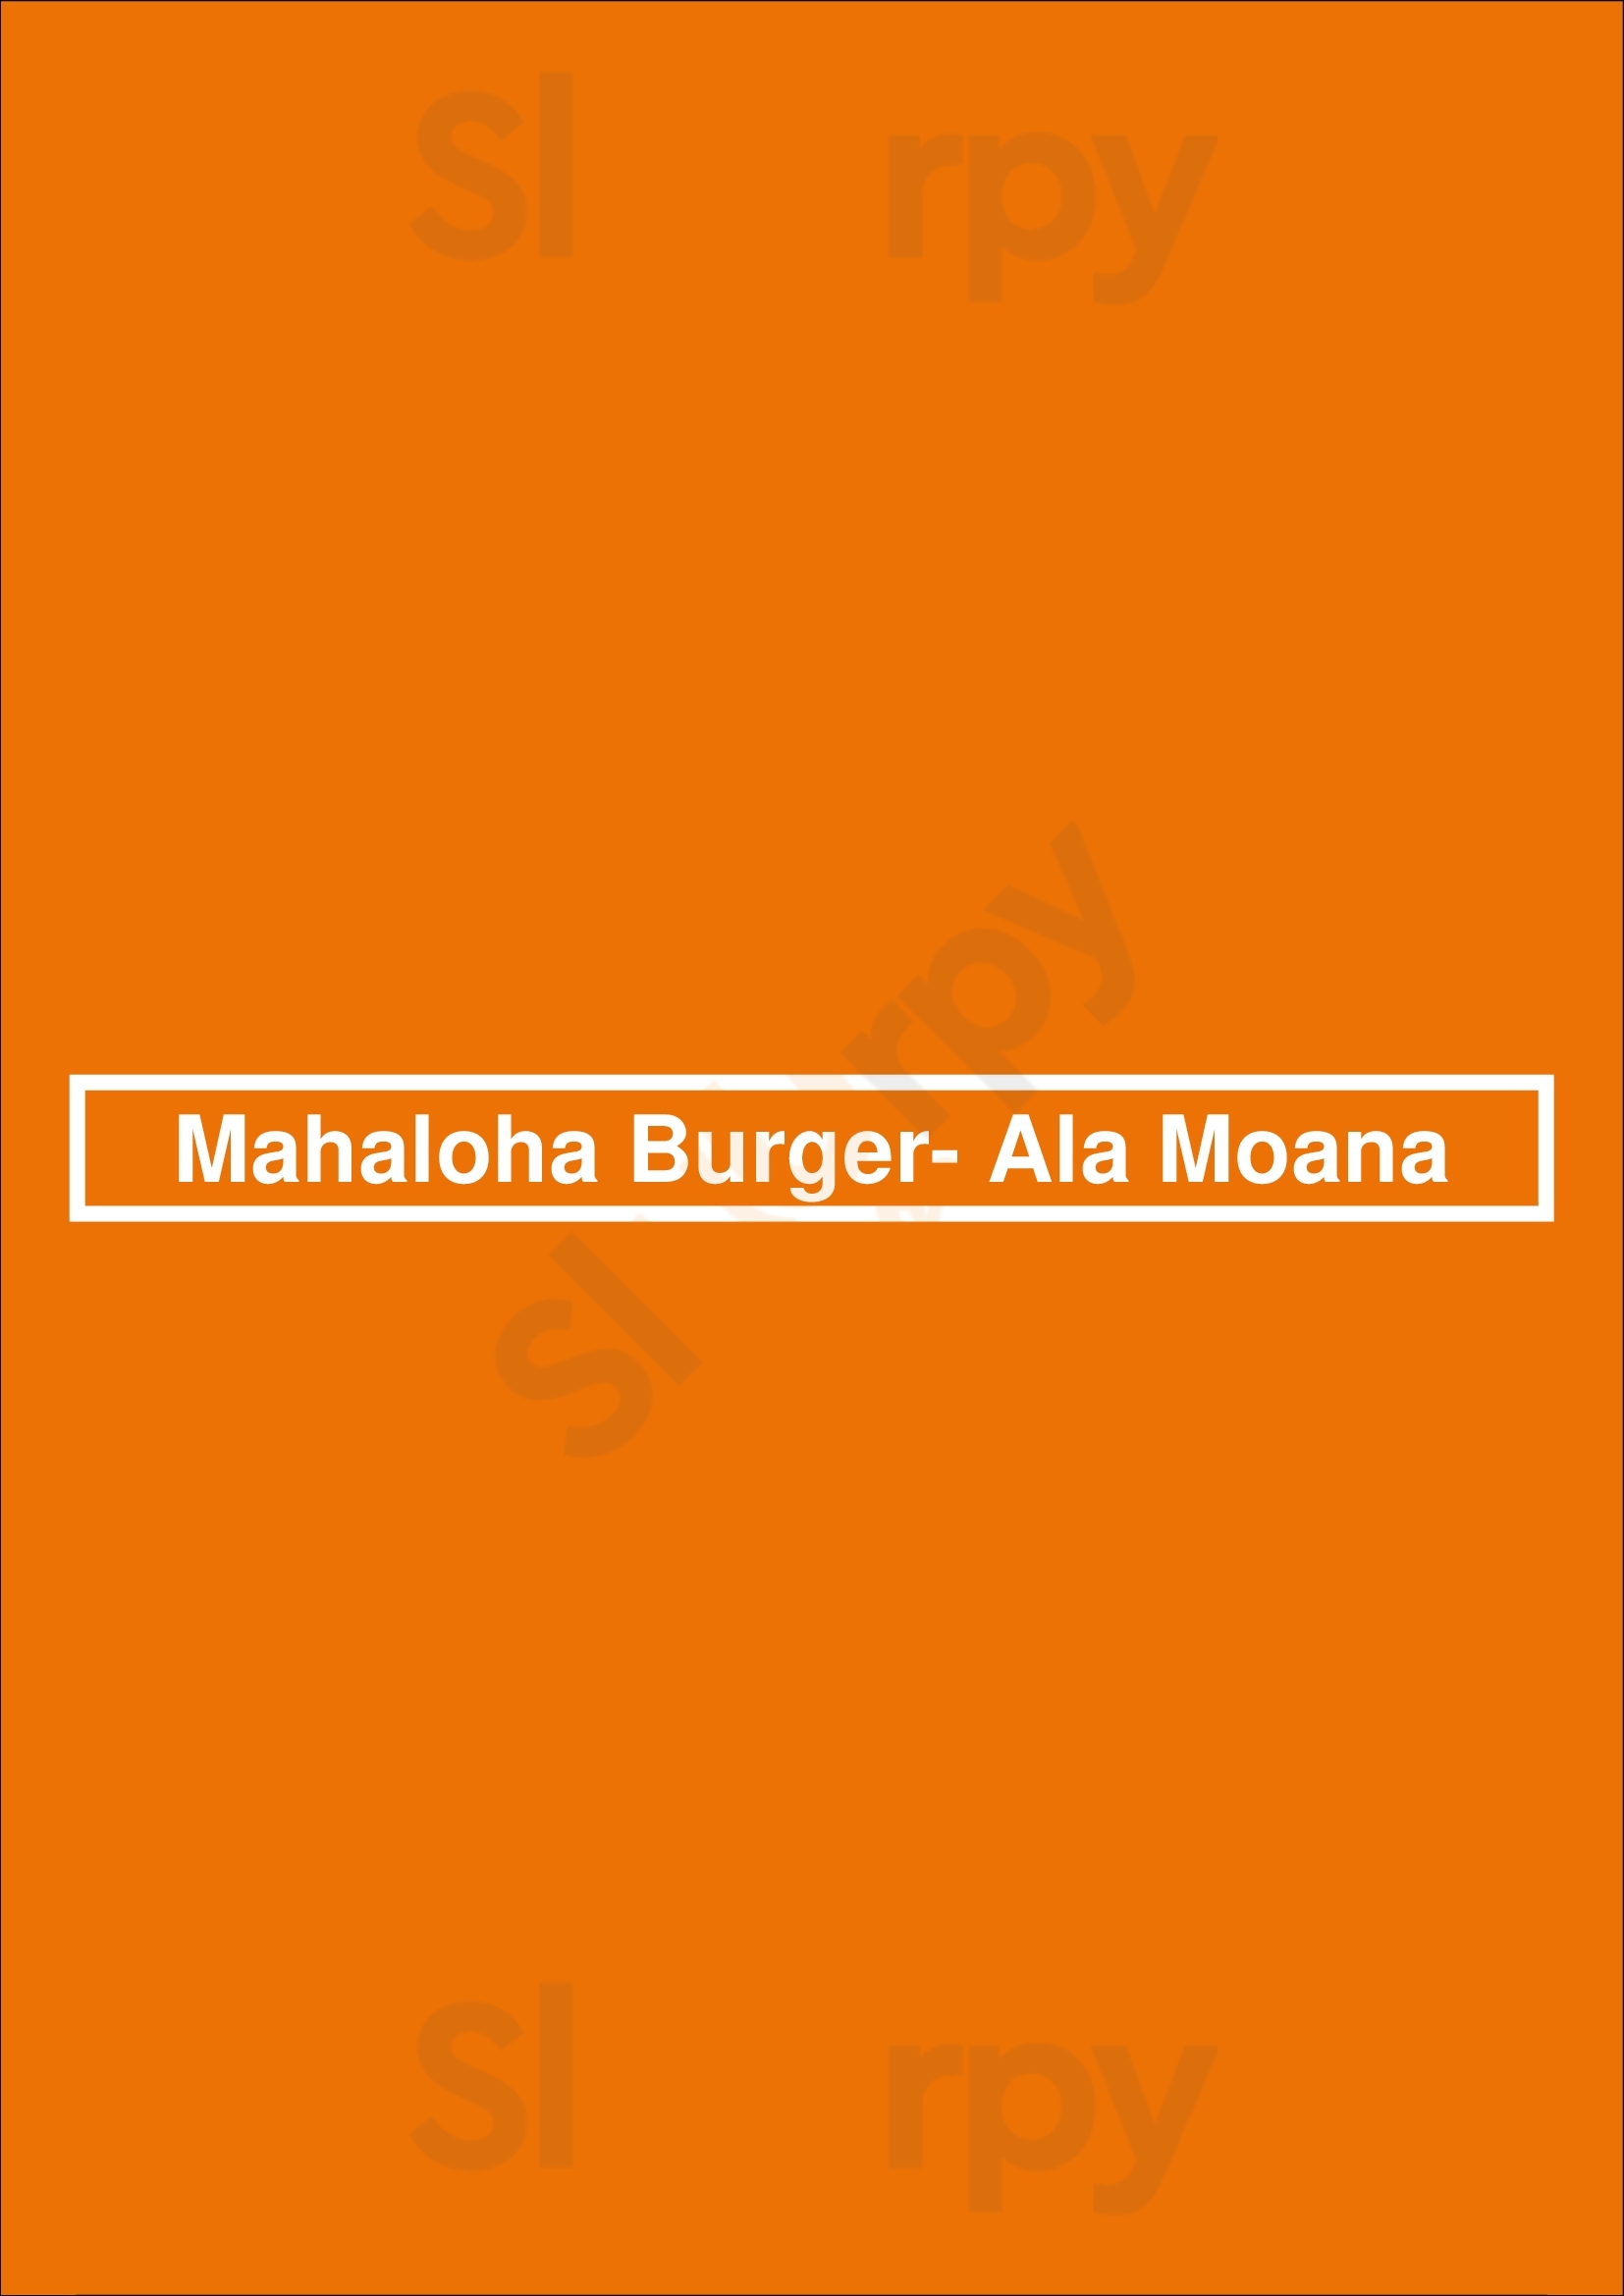 Mahaloha Burger- Ala Moana Honolulu Menu - 1